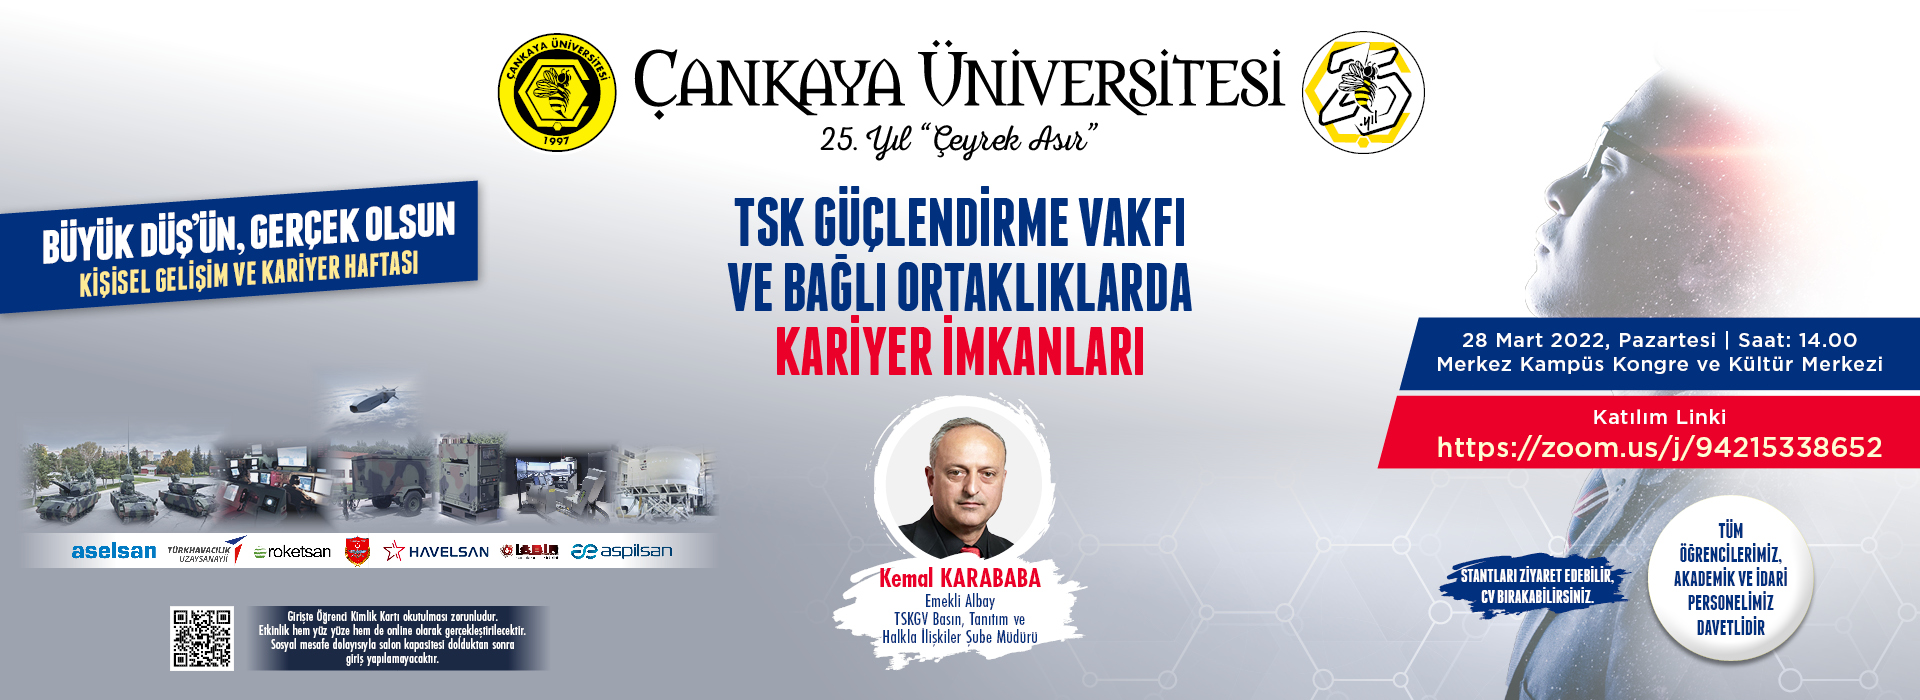 Kişisel Gelişim ve Kariyer Haftası “Türk Silahlı Kuvvetleri Güçlendirme Vakfı ve Bağlı Ortaklıklarda Kariyer İmkanları”